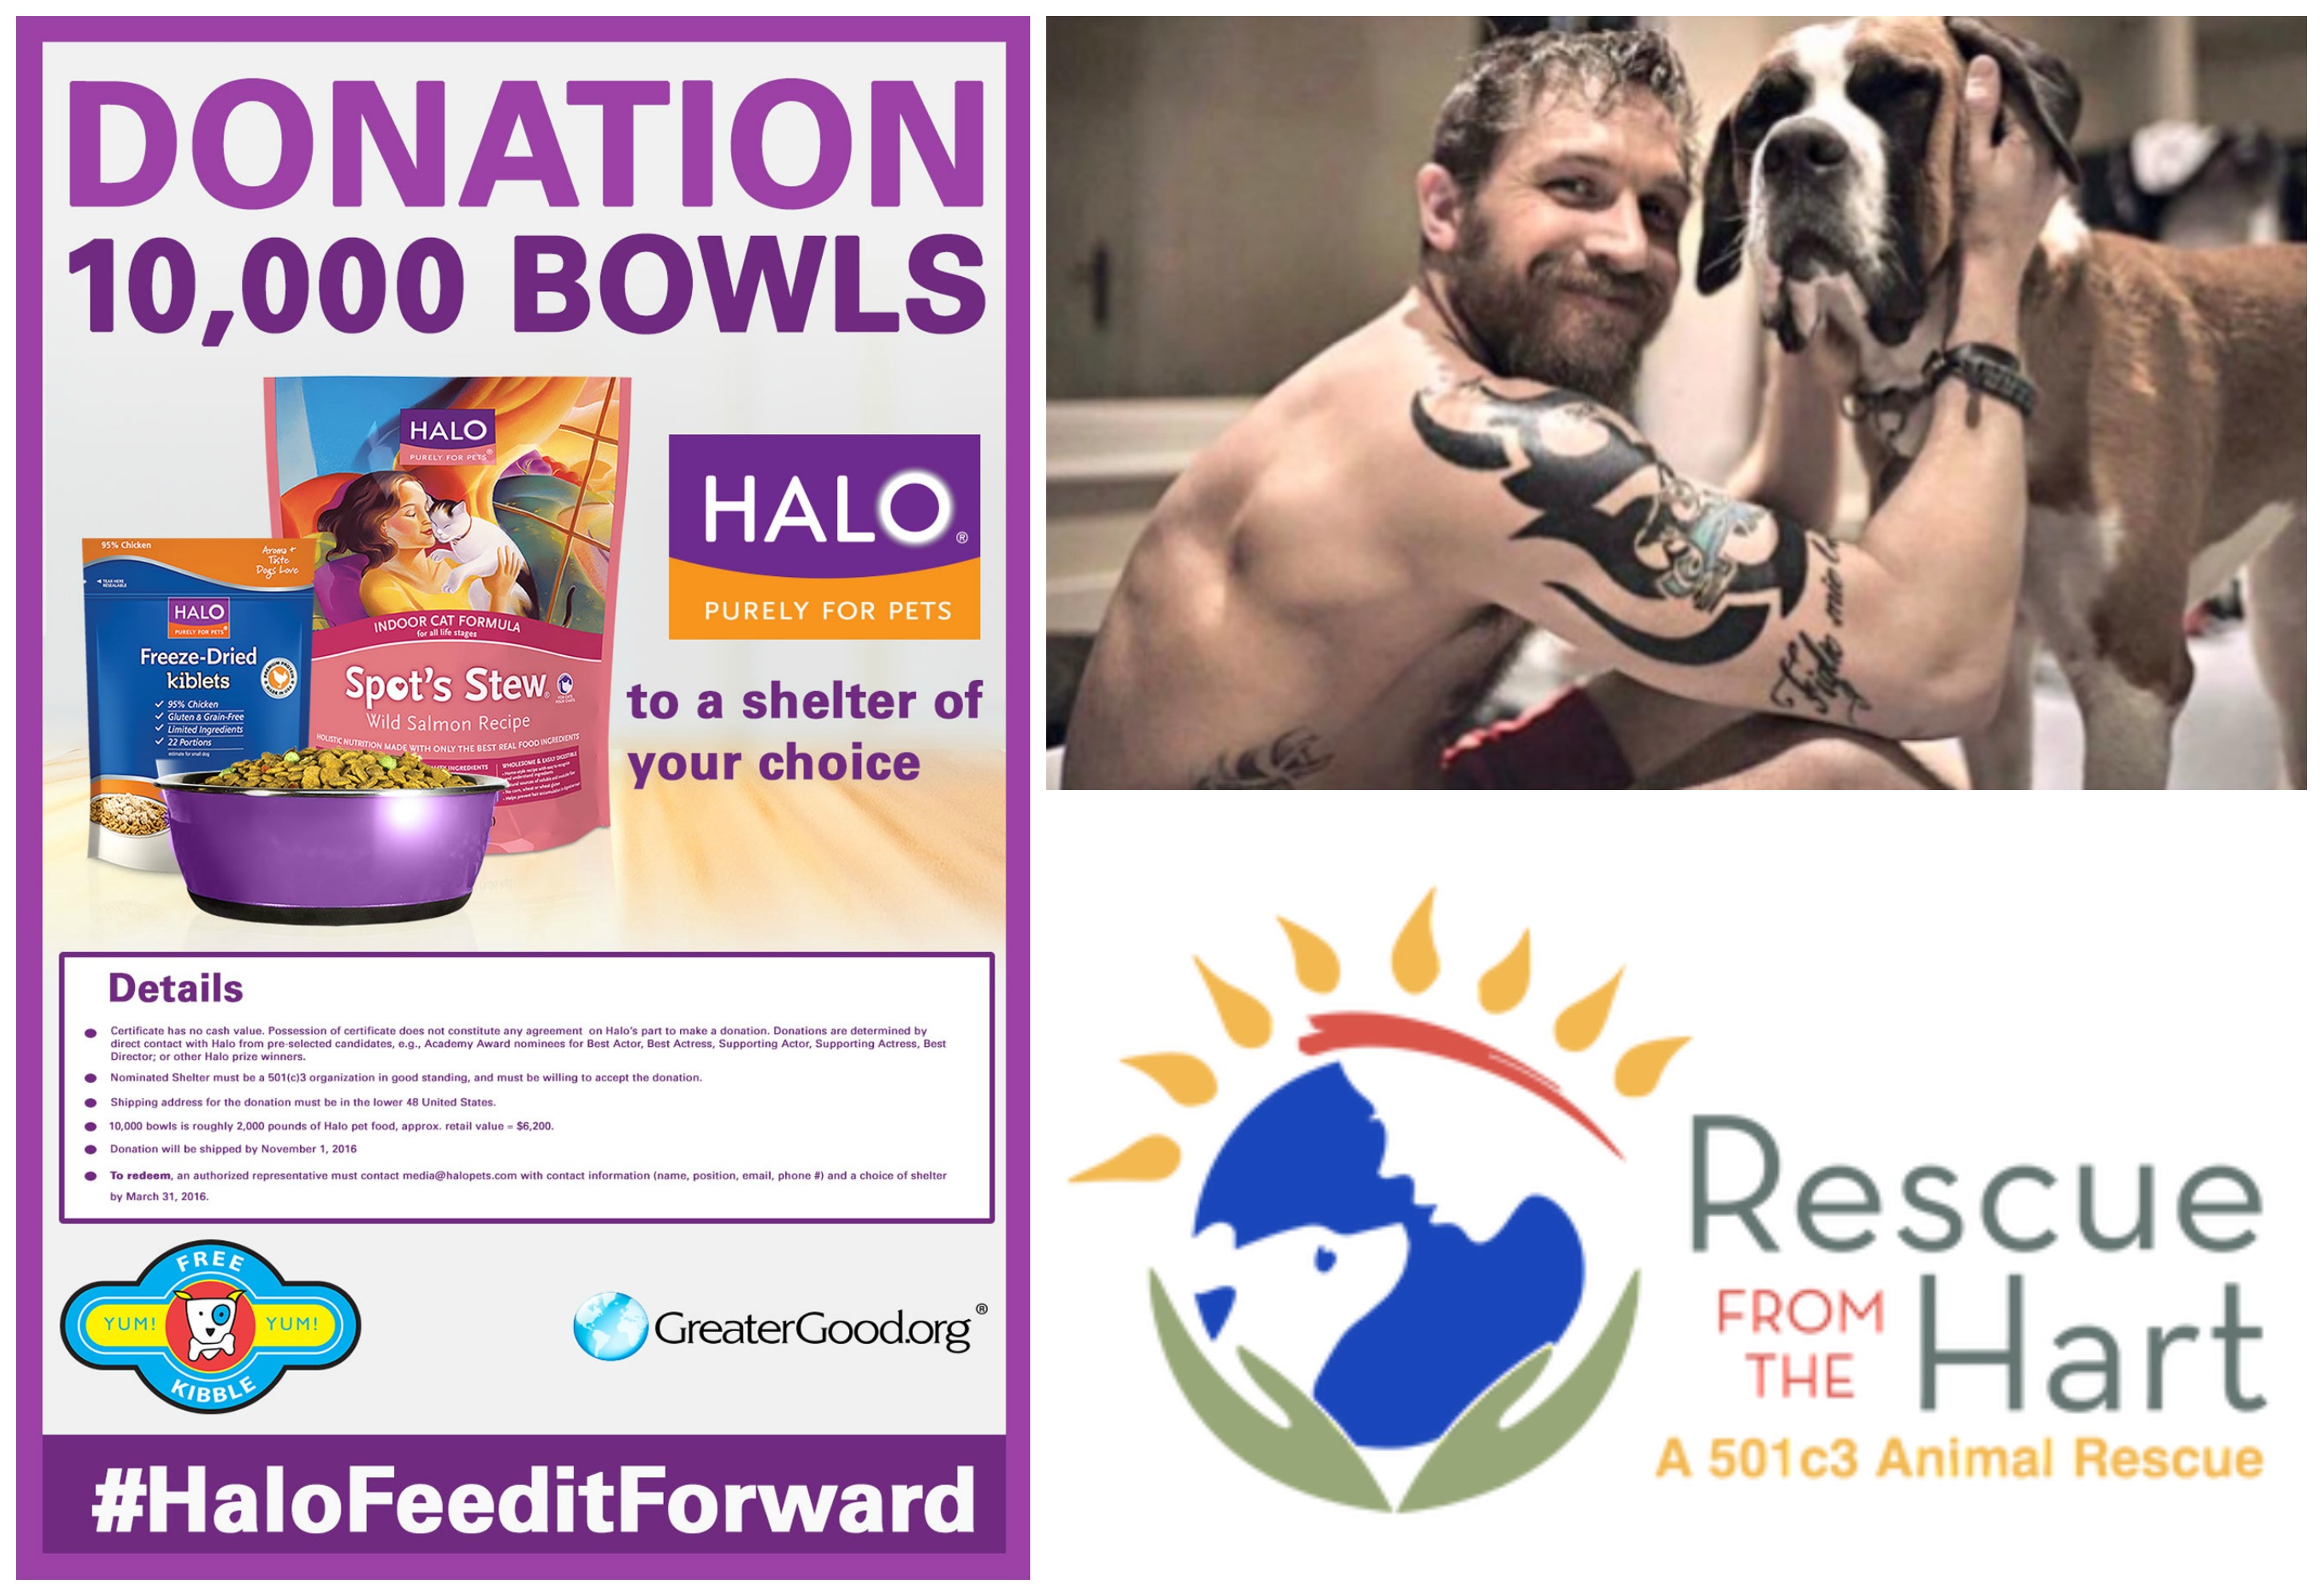 Tom Hardy Donates to Rescue from the Hart - Halo Pet donation #HaloFeeditForward